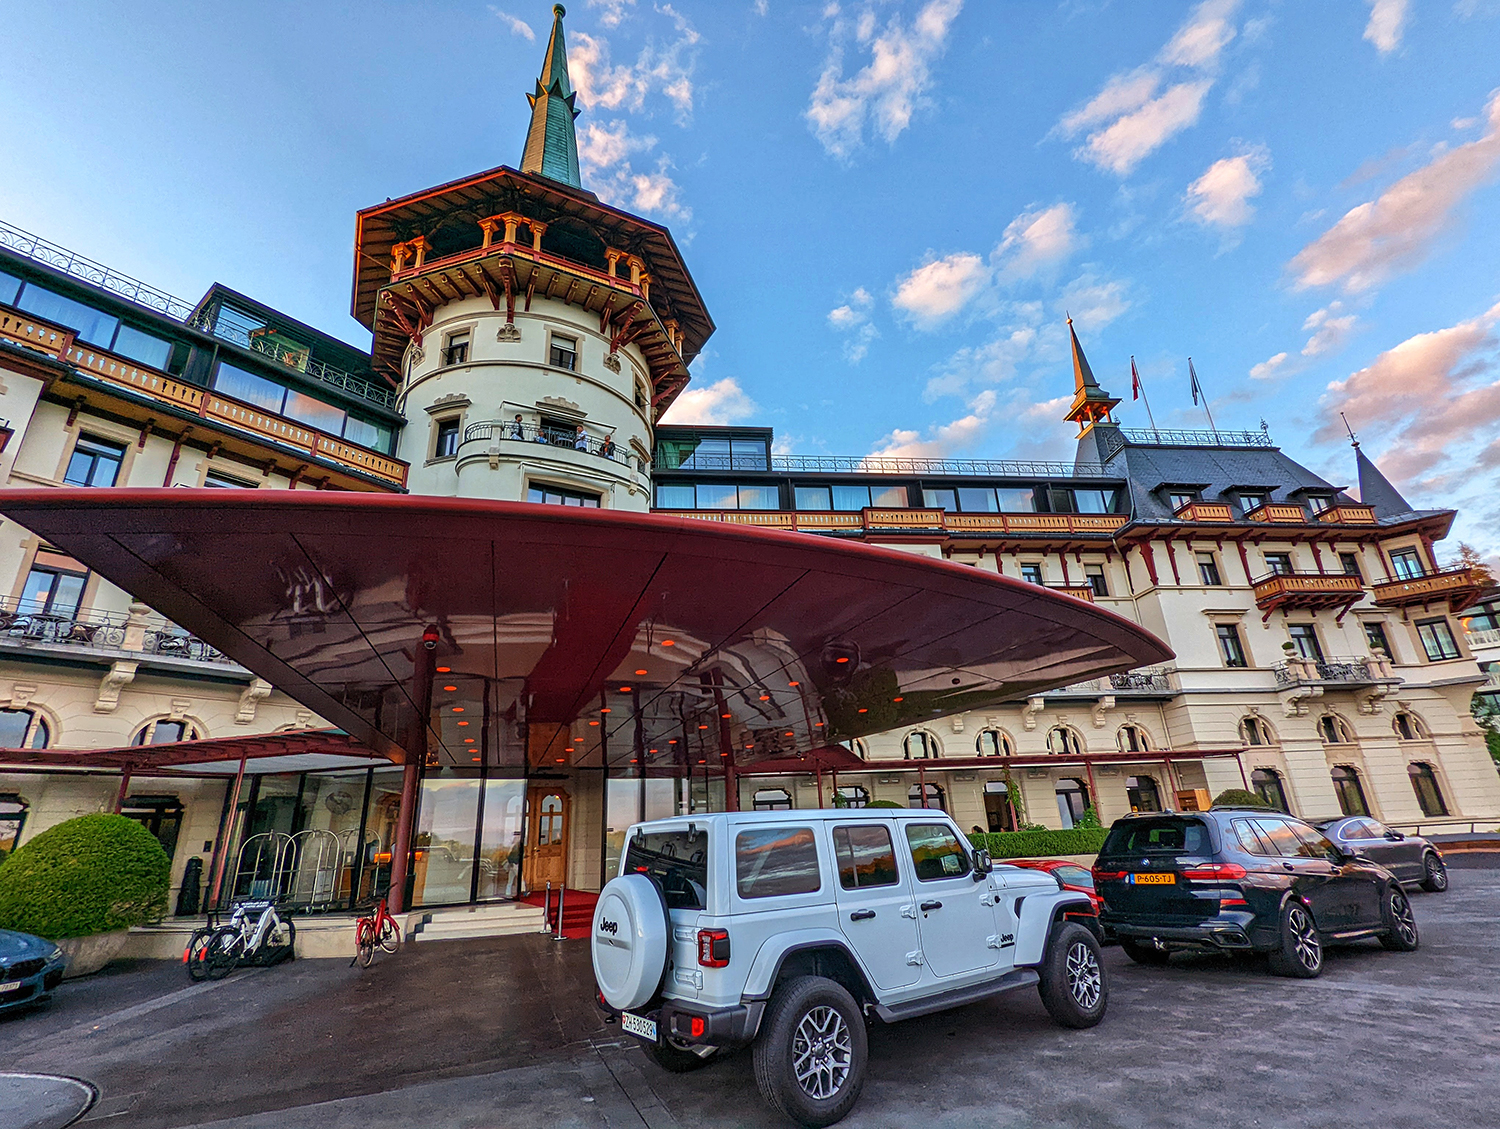 The Dolder Grand hotel in Zurich, Switzerland